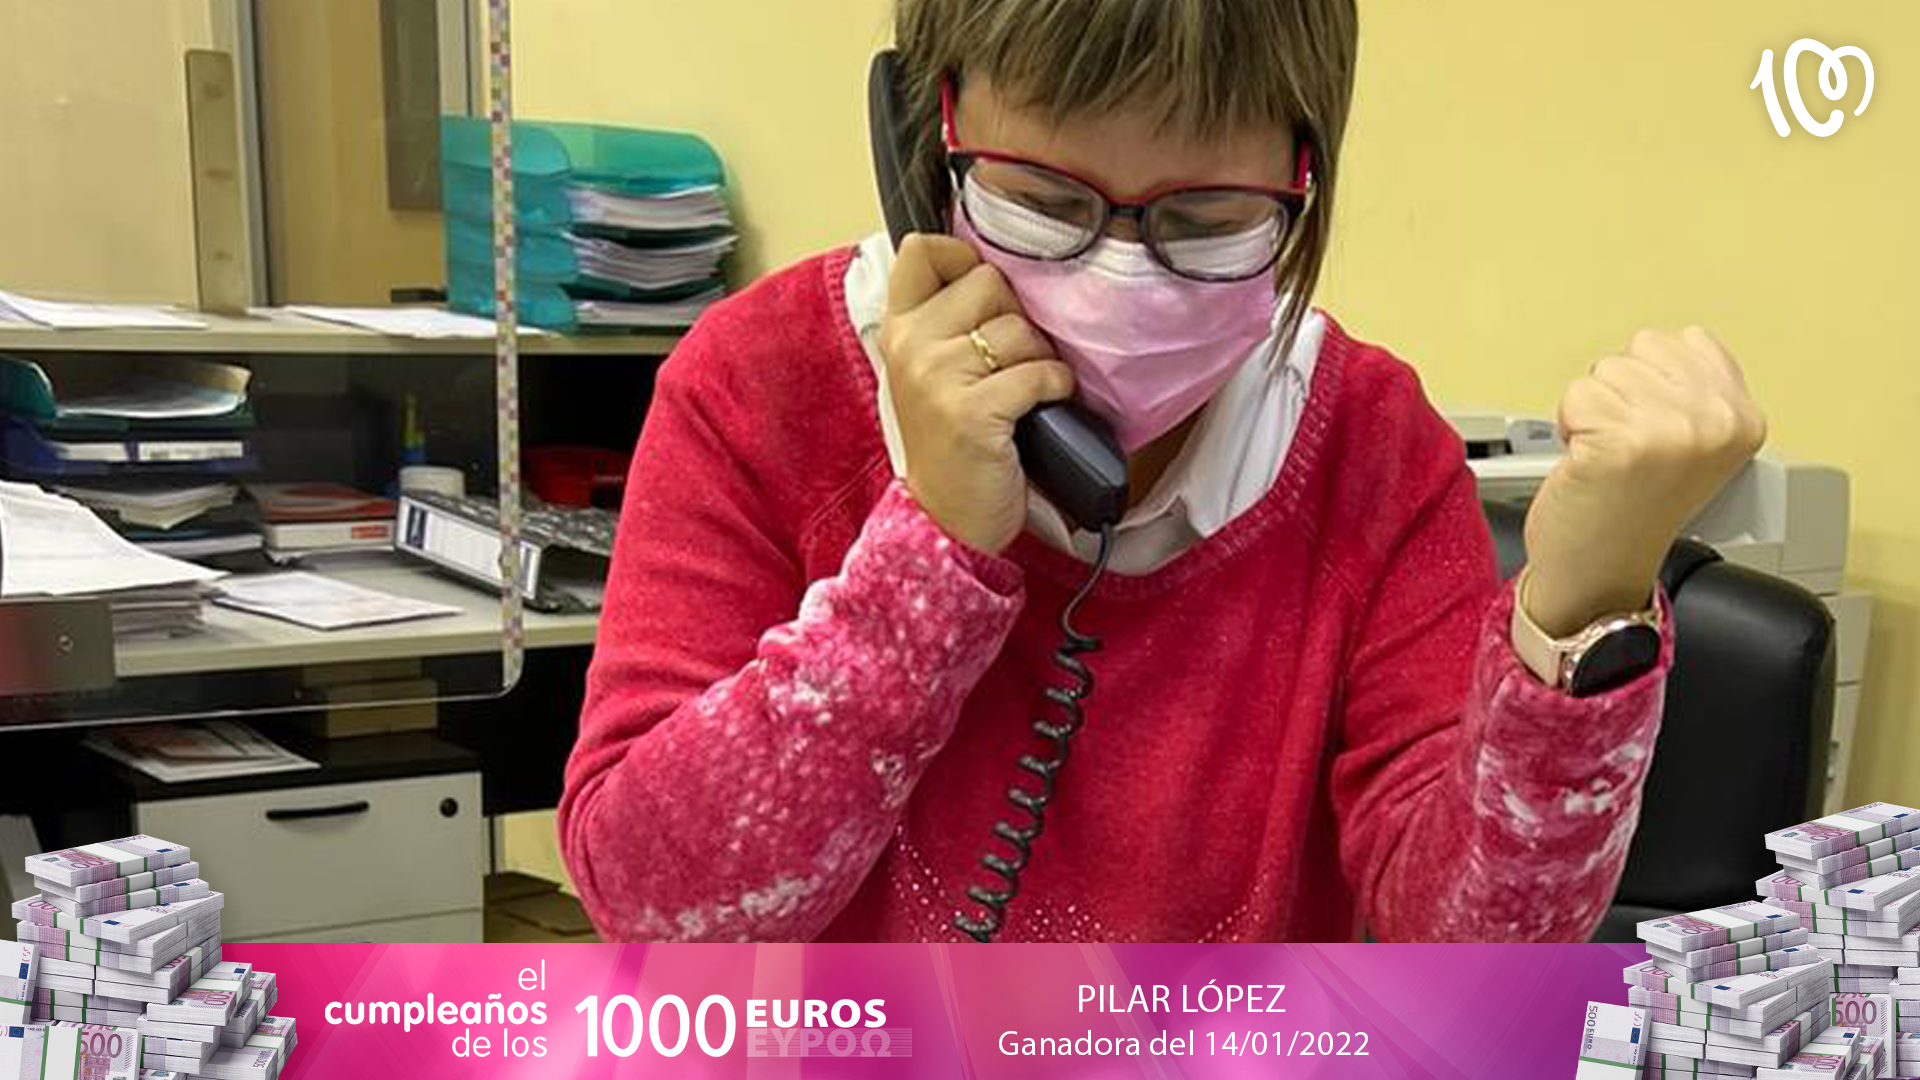 Pilar estrena el viernes con 2.000 euros gracias a CADENA 100: "¡Es un subidón!"